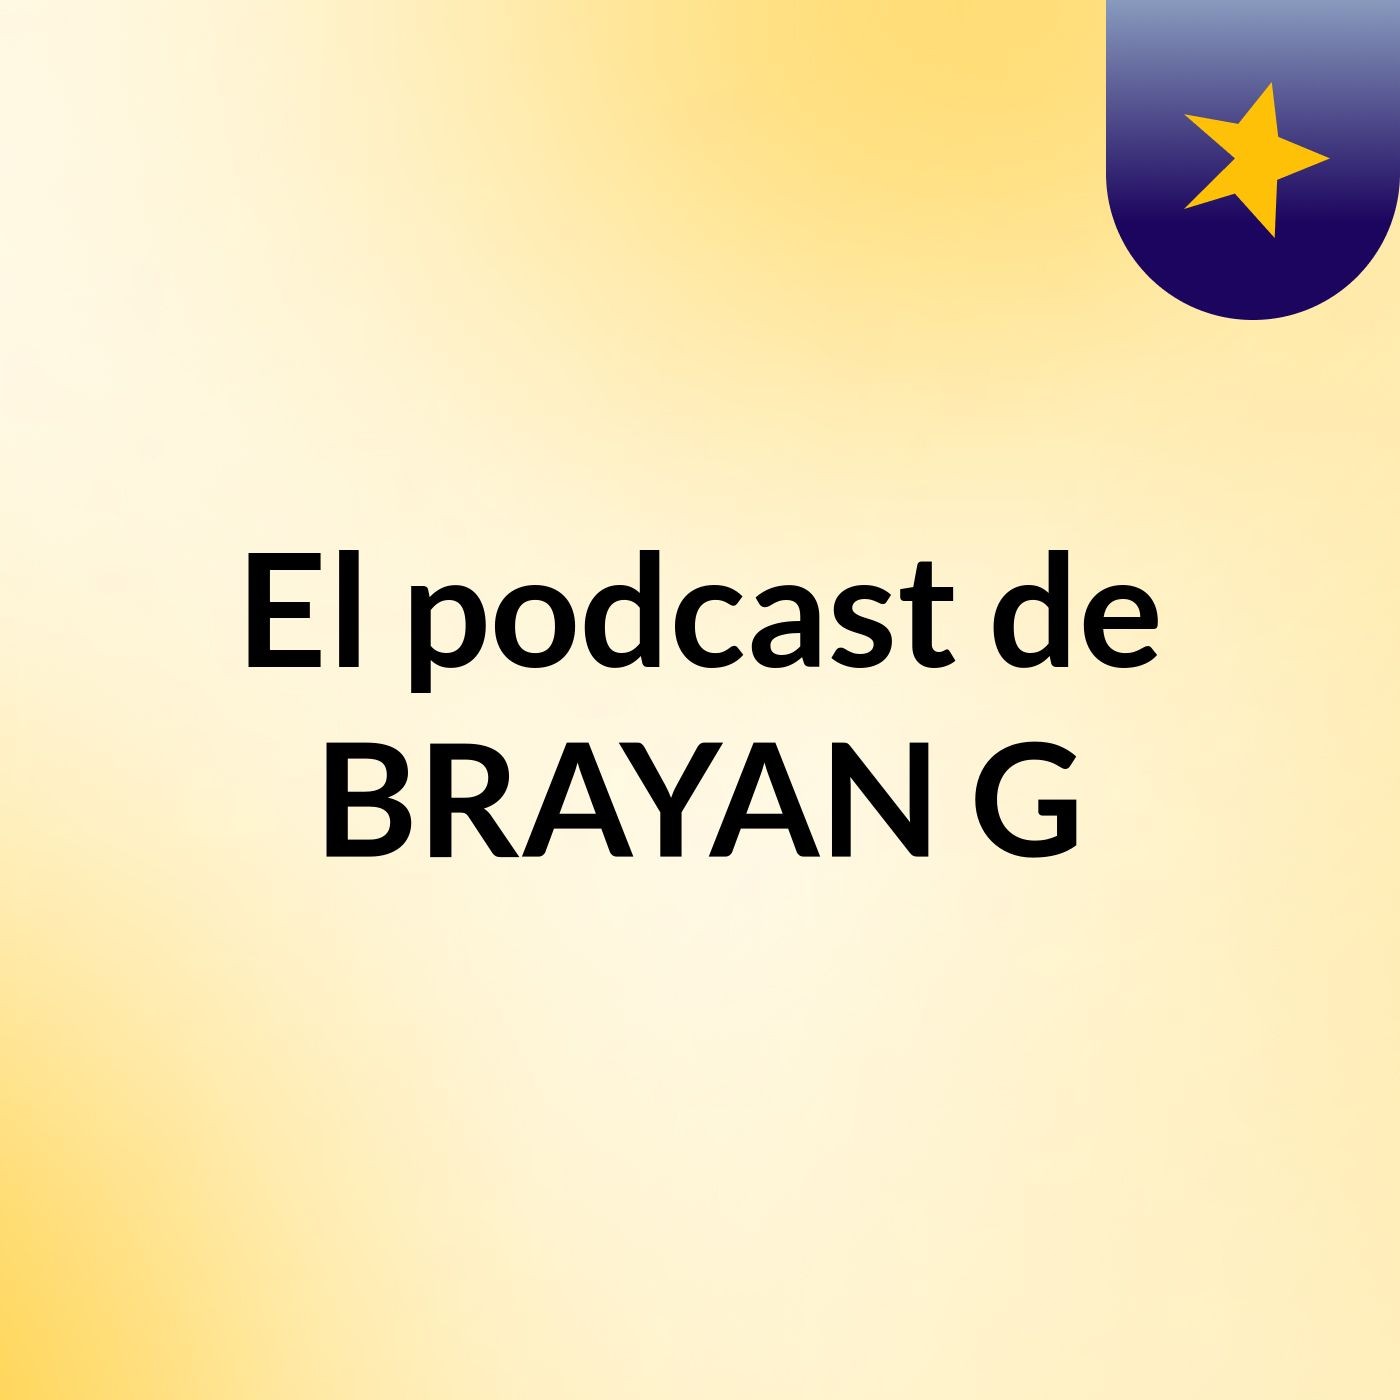 Episodio 3 - El podcast de BRAYAN G